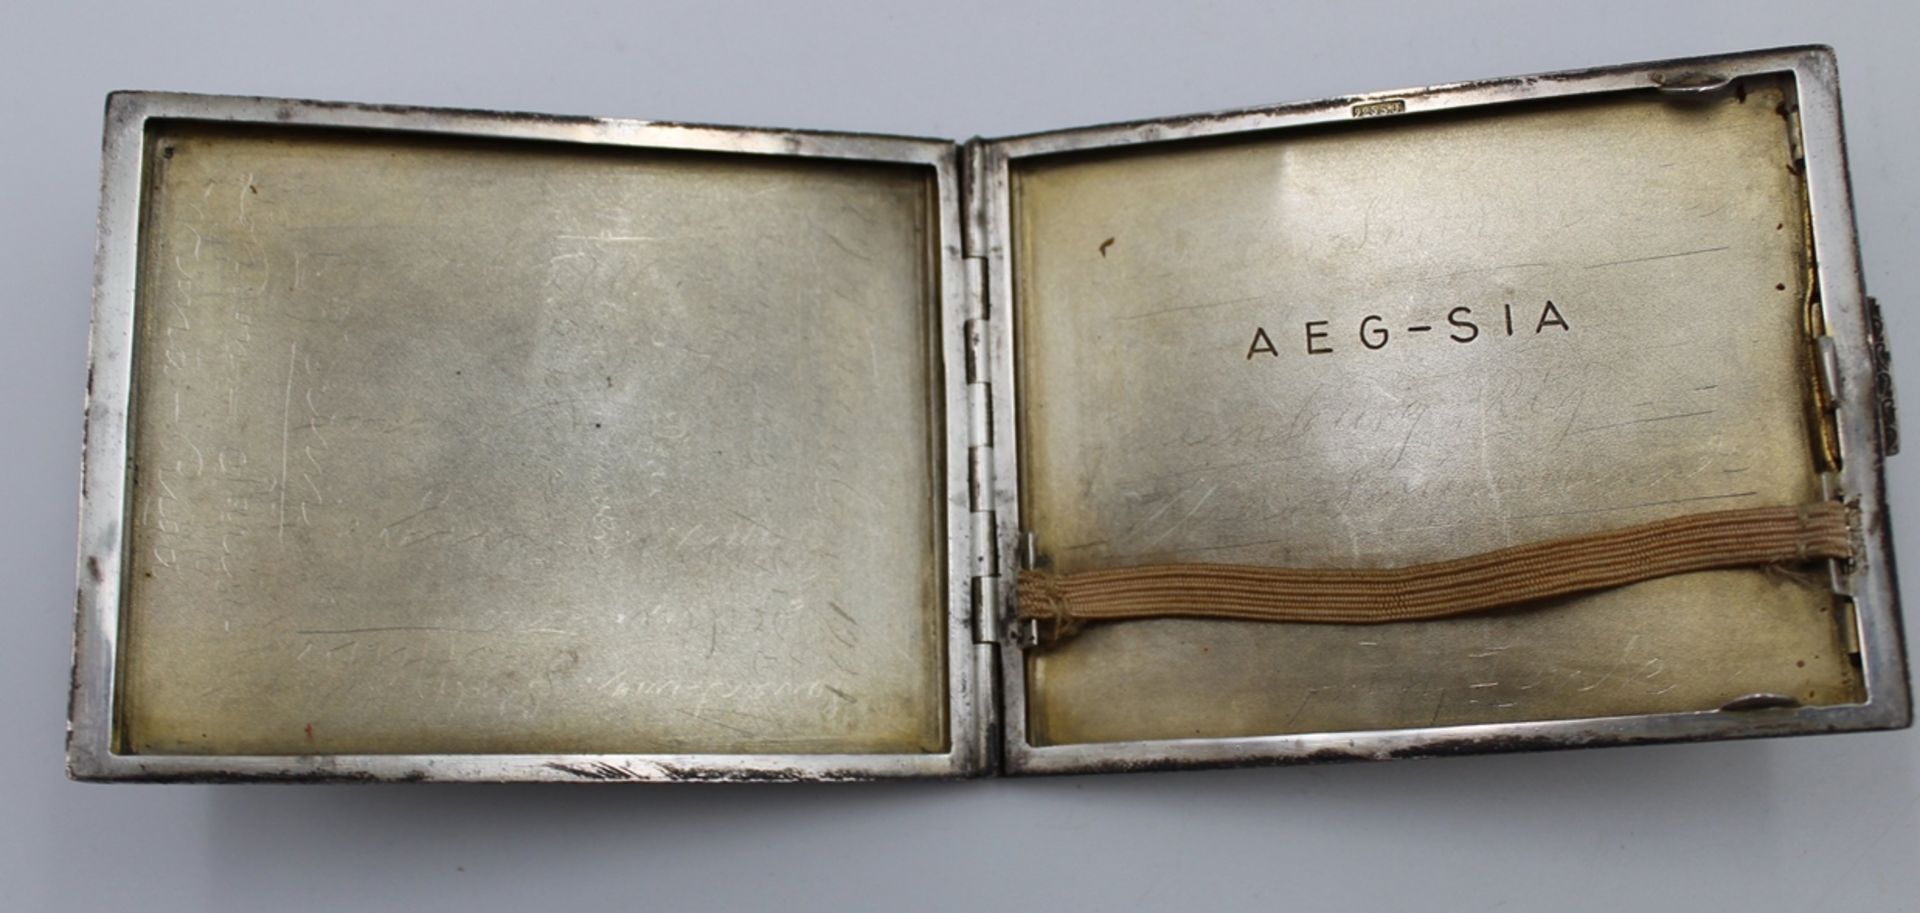 Zigaretten-Etui, 925er Silber, innen Gravur "AEG-SIA" und undeutl. Ritzgravuren, 123gr., ungeputzte - Bild 3 aus 6